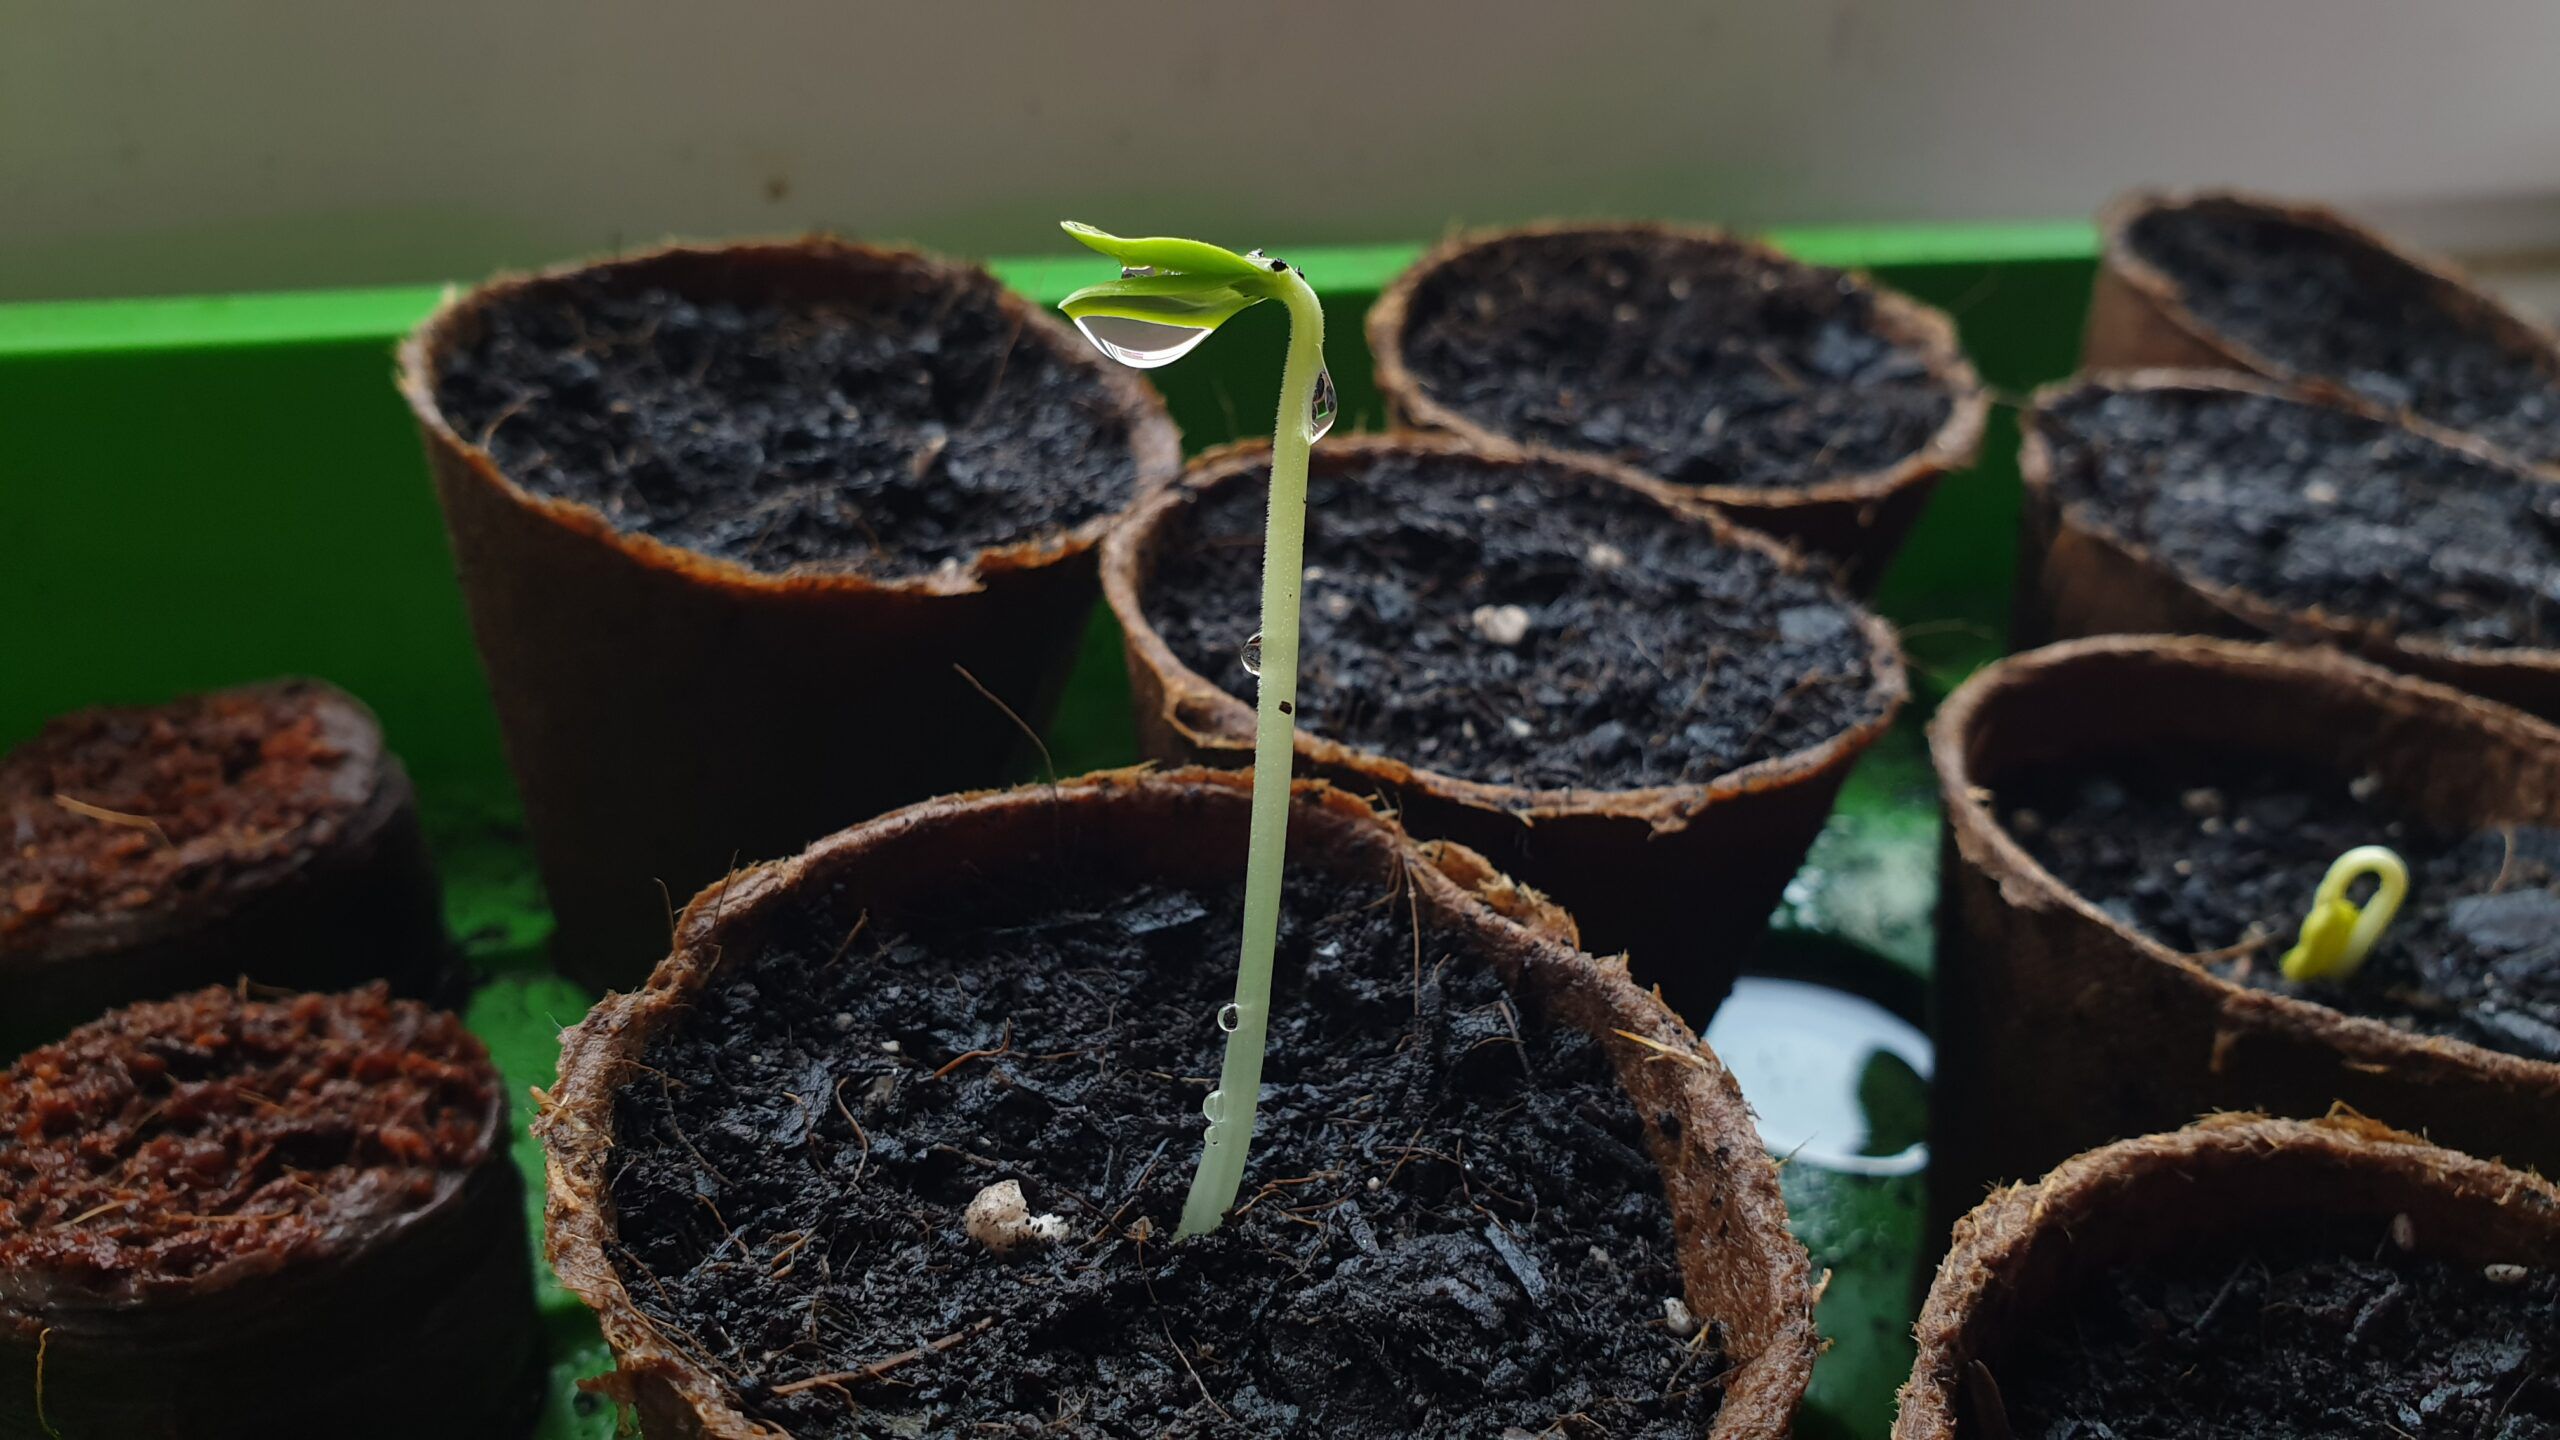 Keimung von Samen: Definition und Ablauf